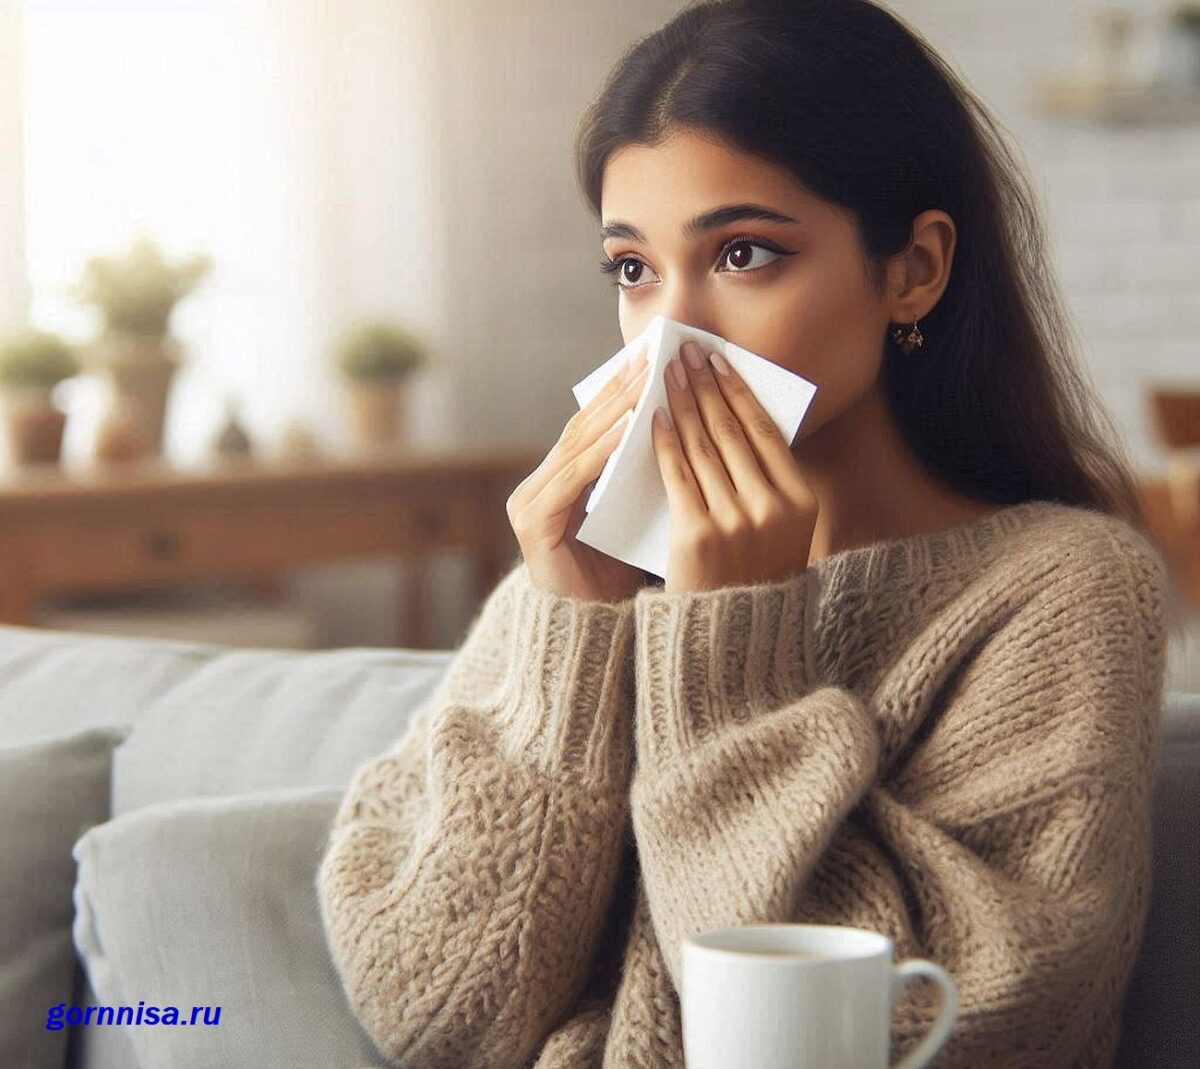 Аллергия или простуда - несколько верных признаков